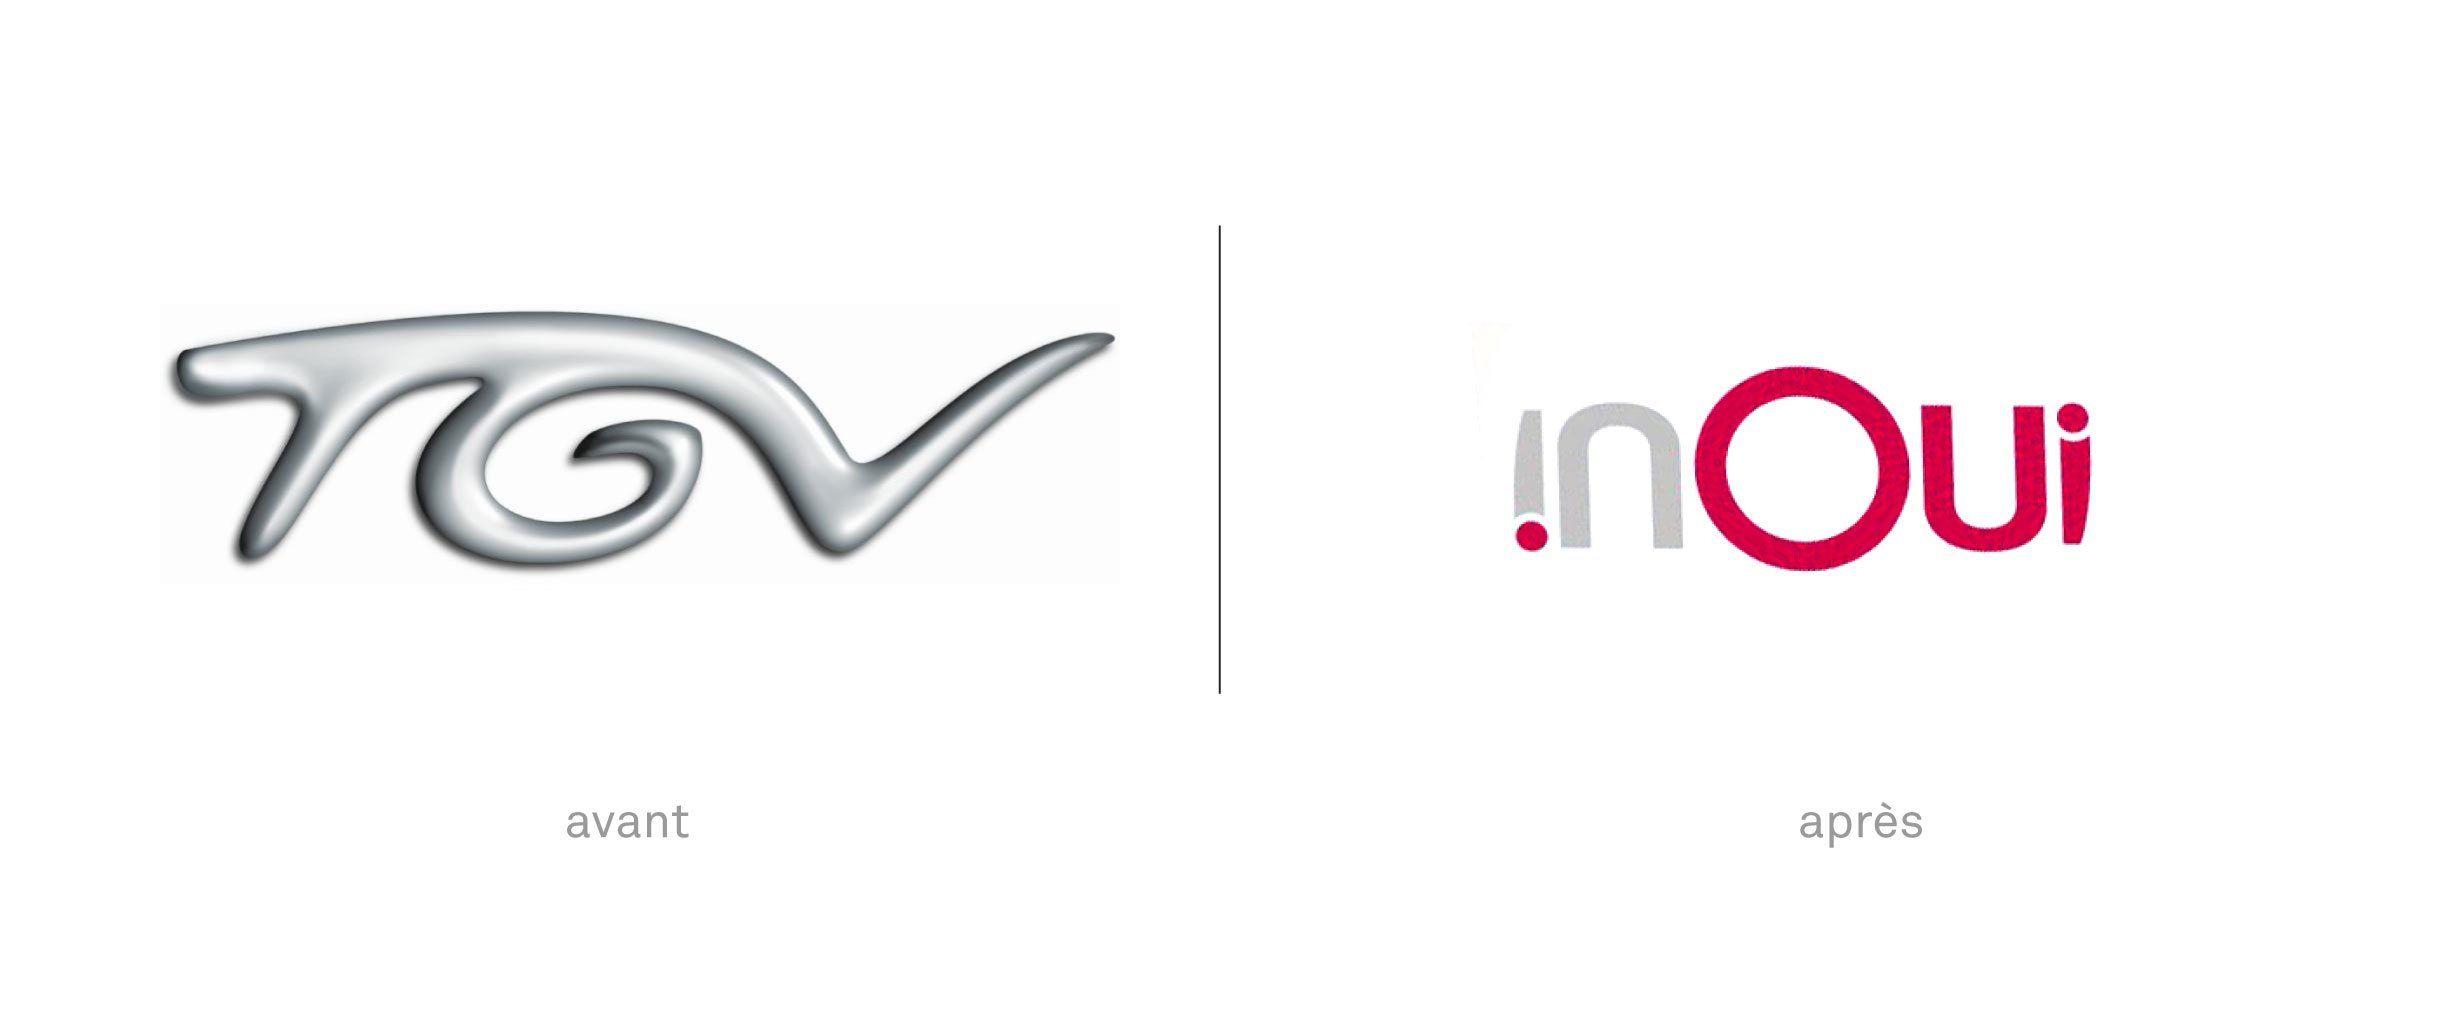 SNCF Logo - Inoui ! Le nouveau logo des TGV.éine